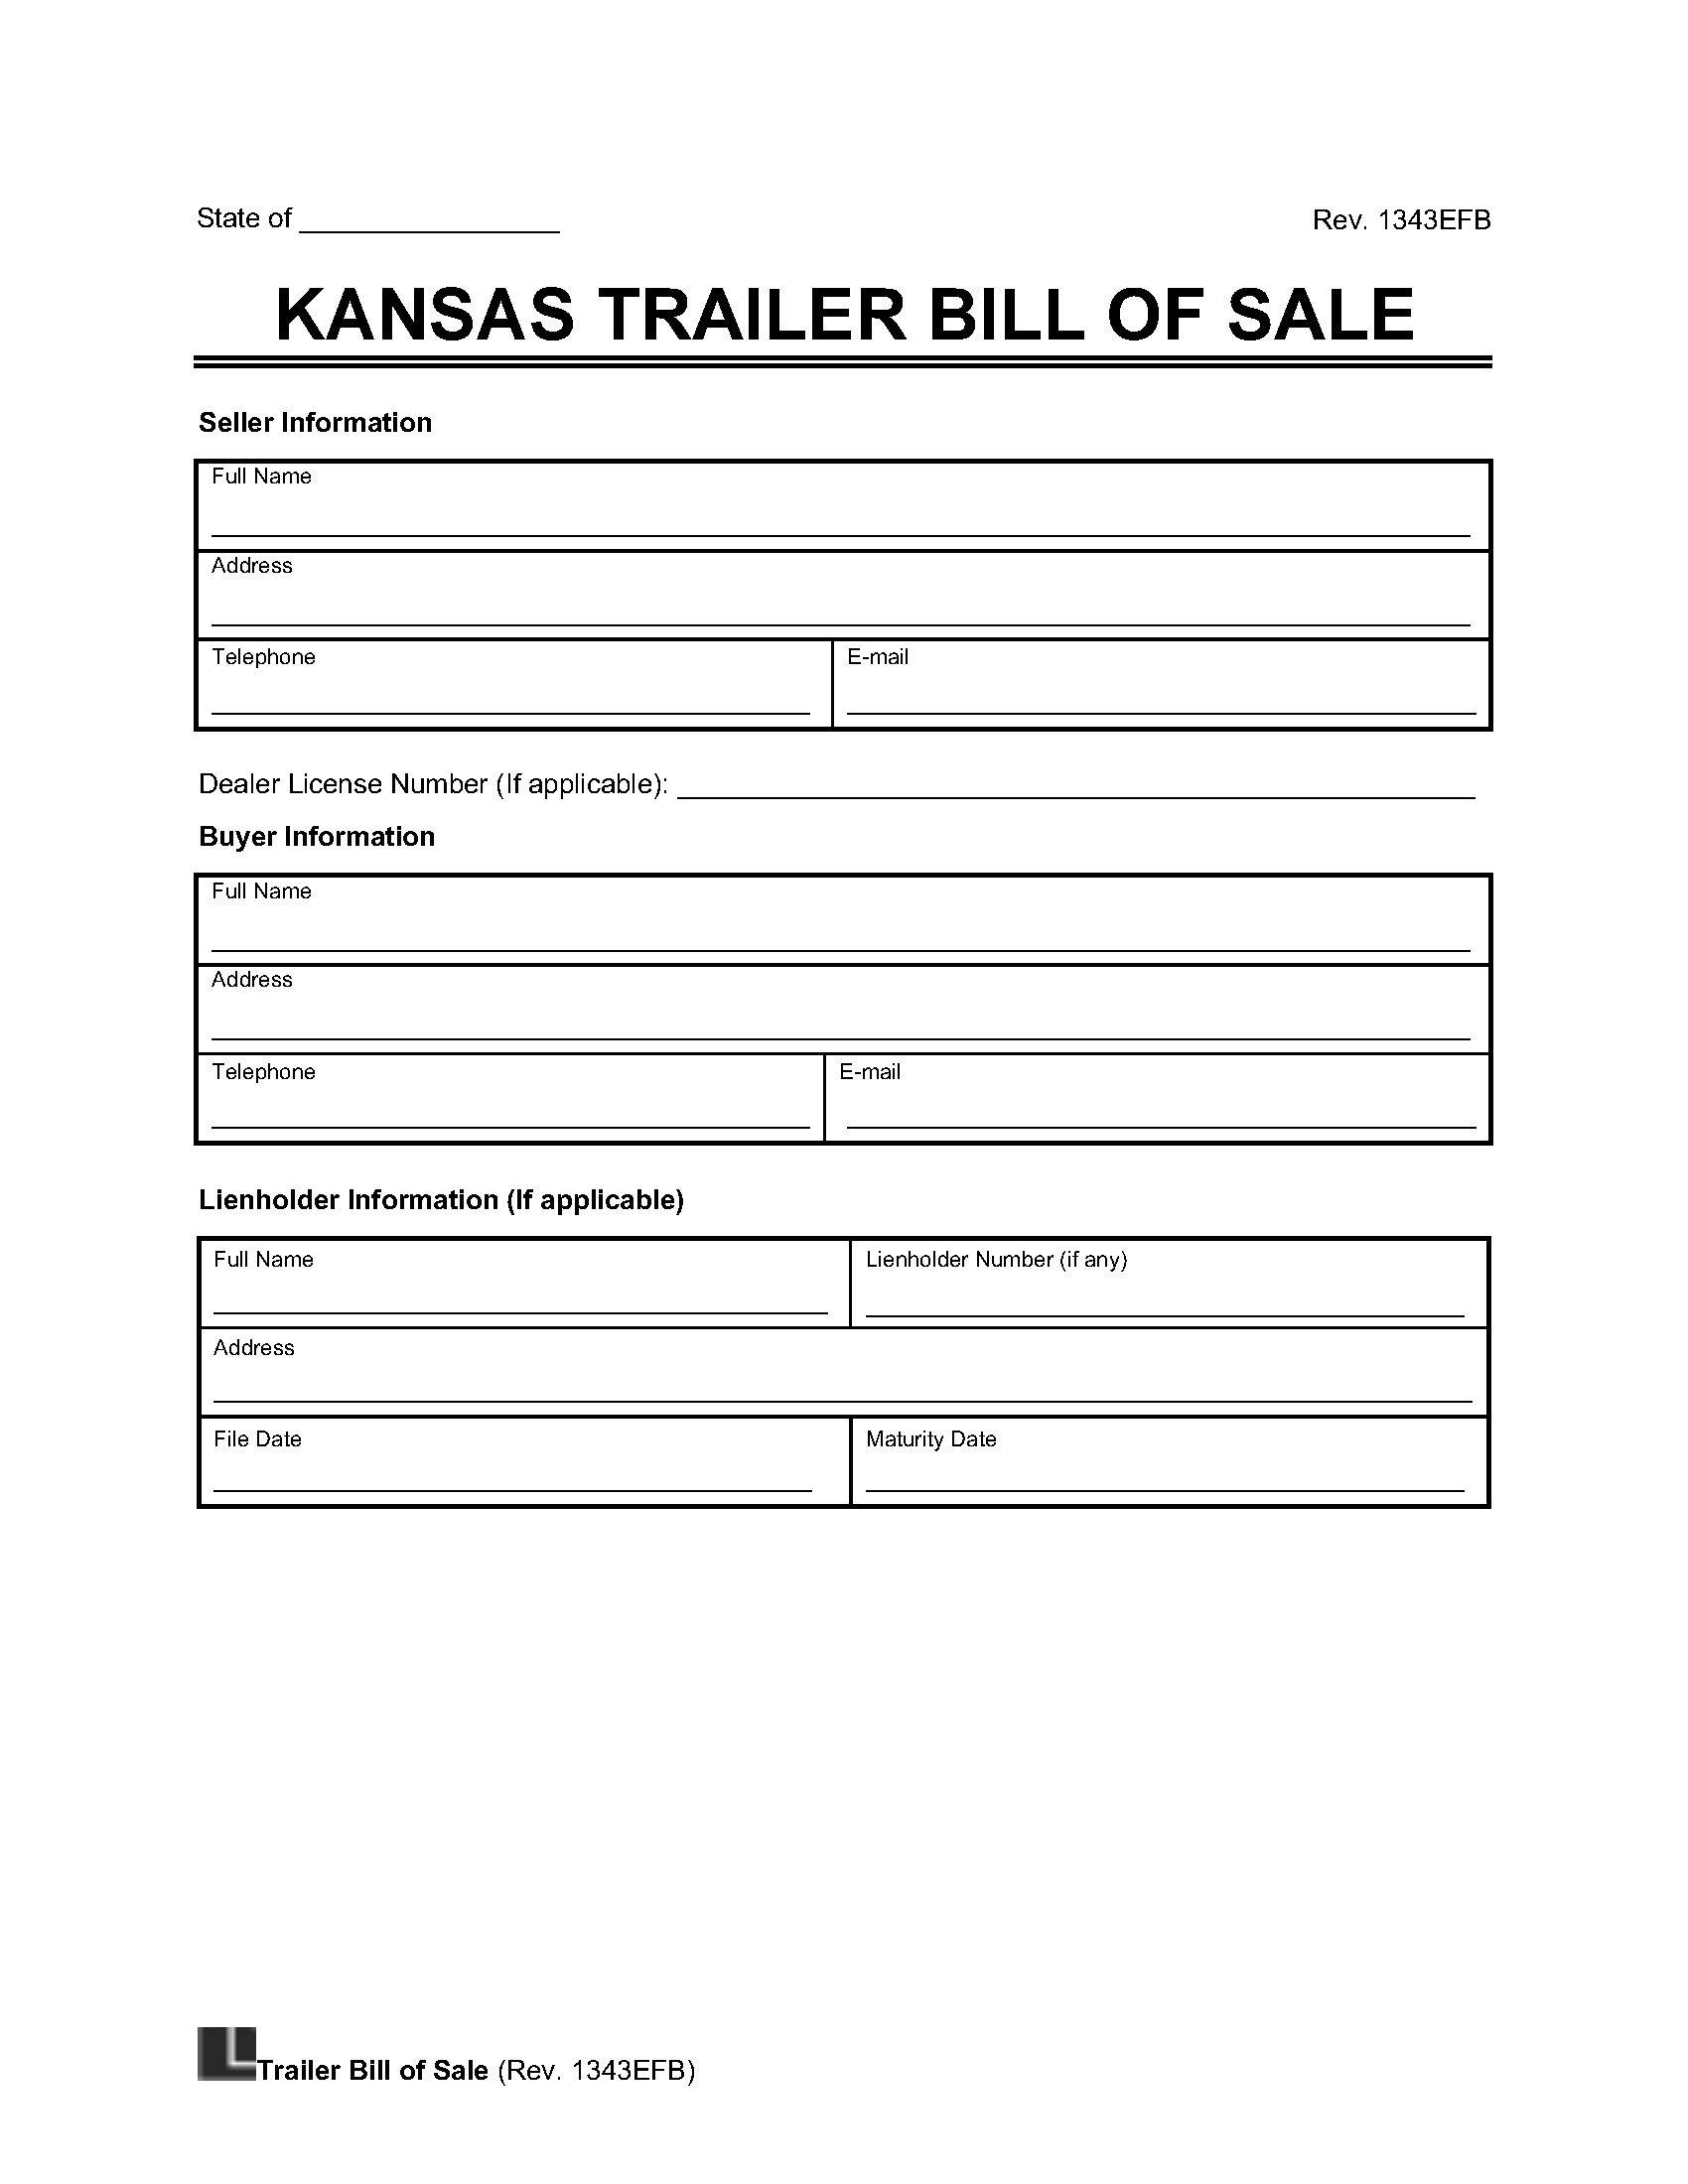 Kansas Trailer Bill of Sale screenshot